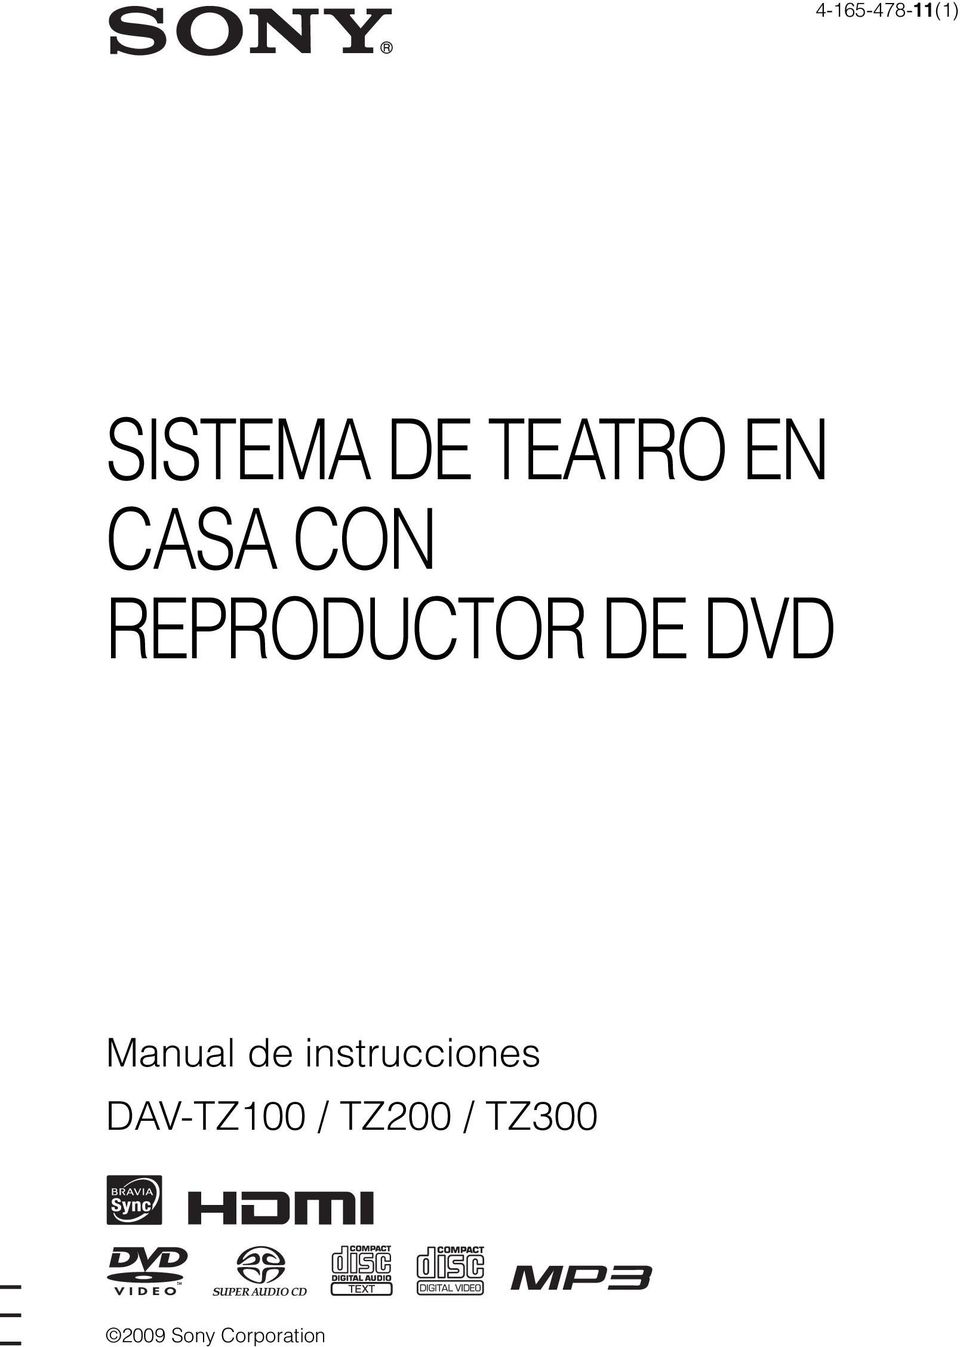 Manual de instrucciones DAV-TZ100